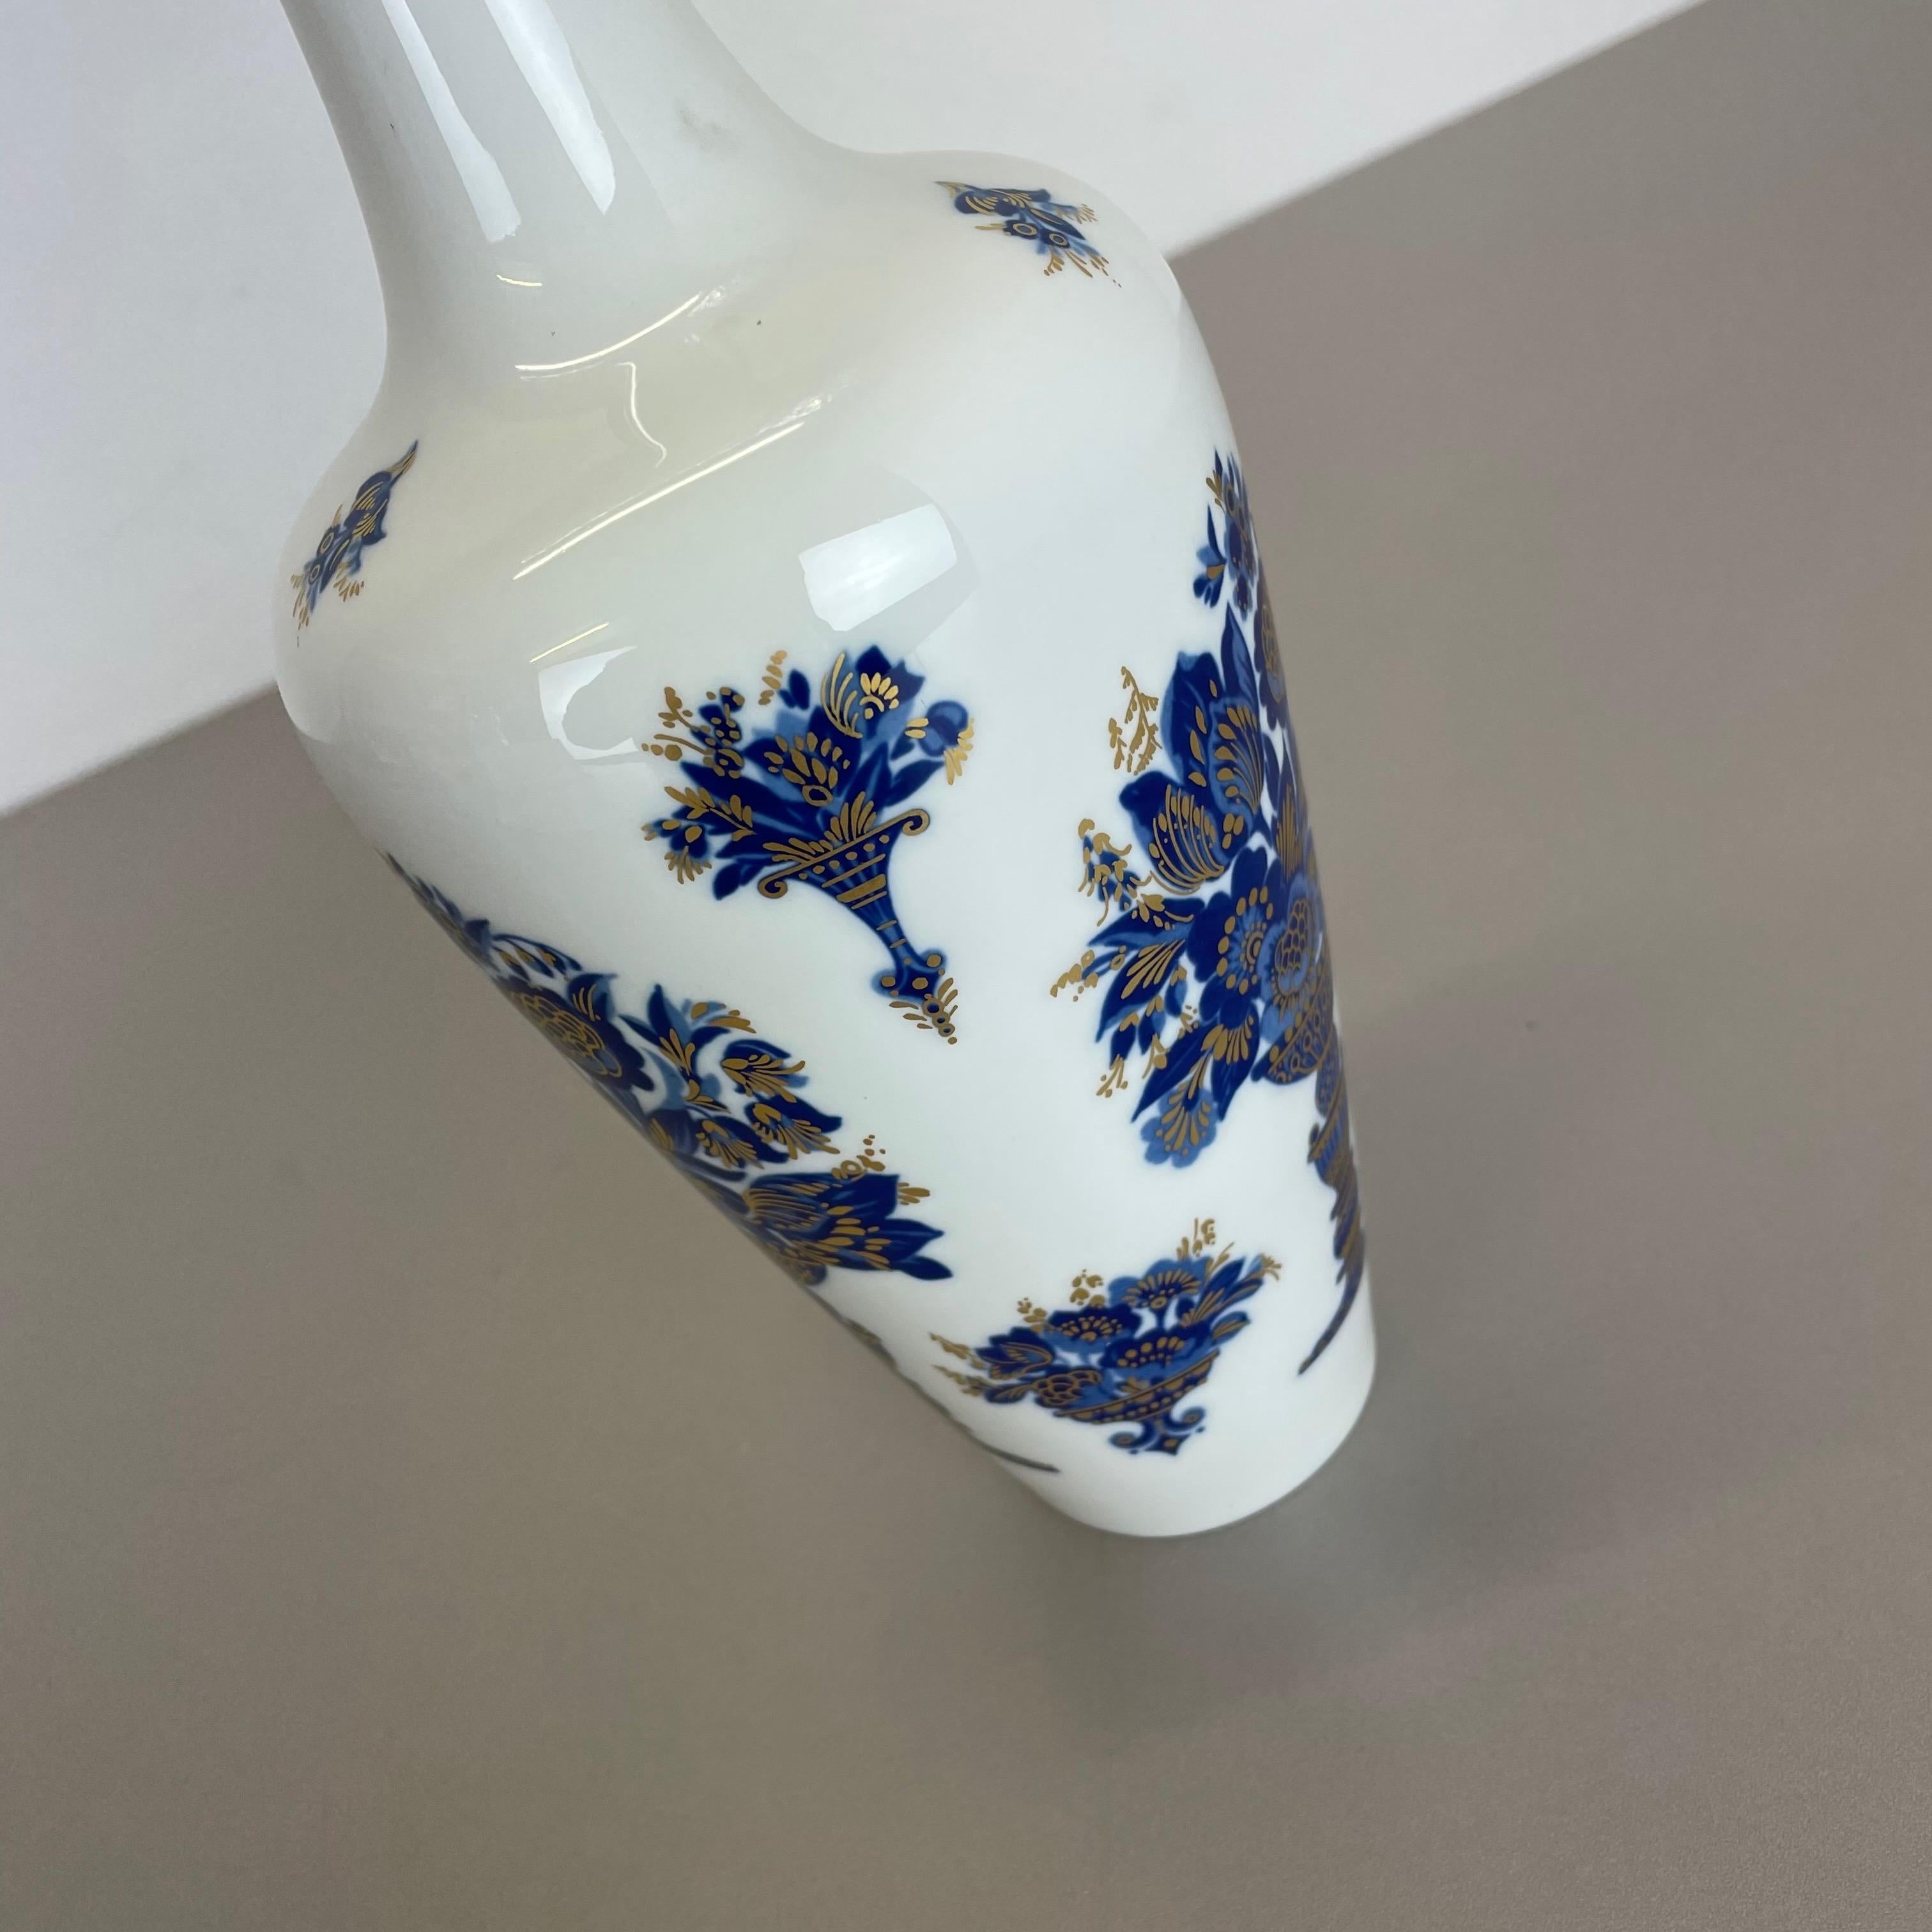 Original 1970s Op Art Vase Porcelain German Vase by Heinrich Ceramics, Germany For Sale 6